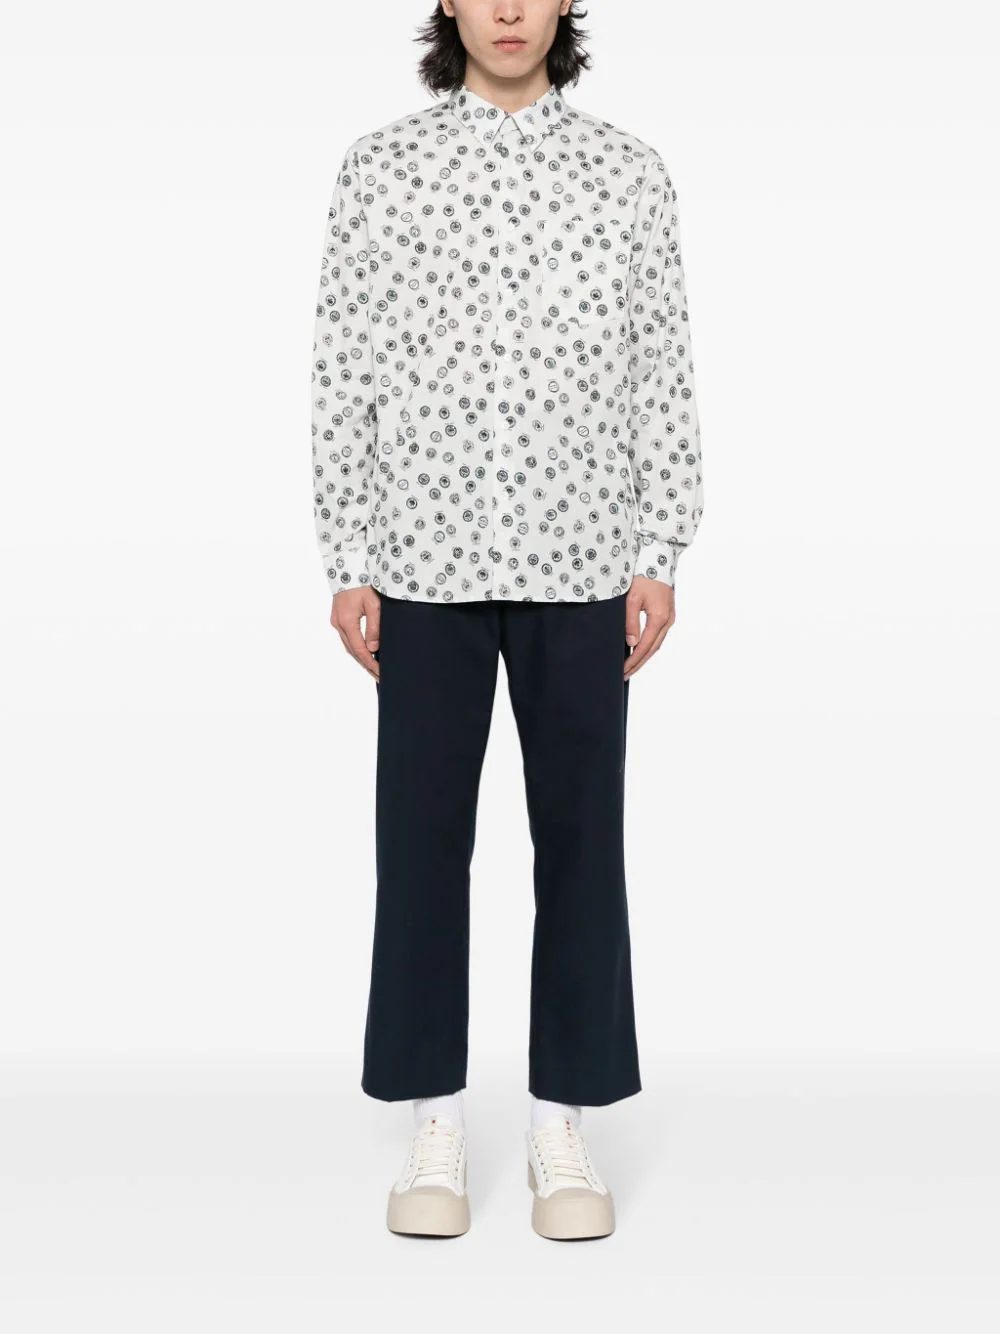 Находки недели: шерстяной джемпер Loewe, куртка Fendi с 3D-принтом и джинсовые шорты